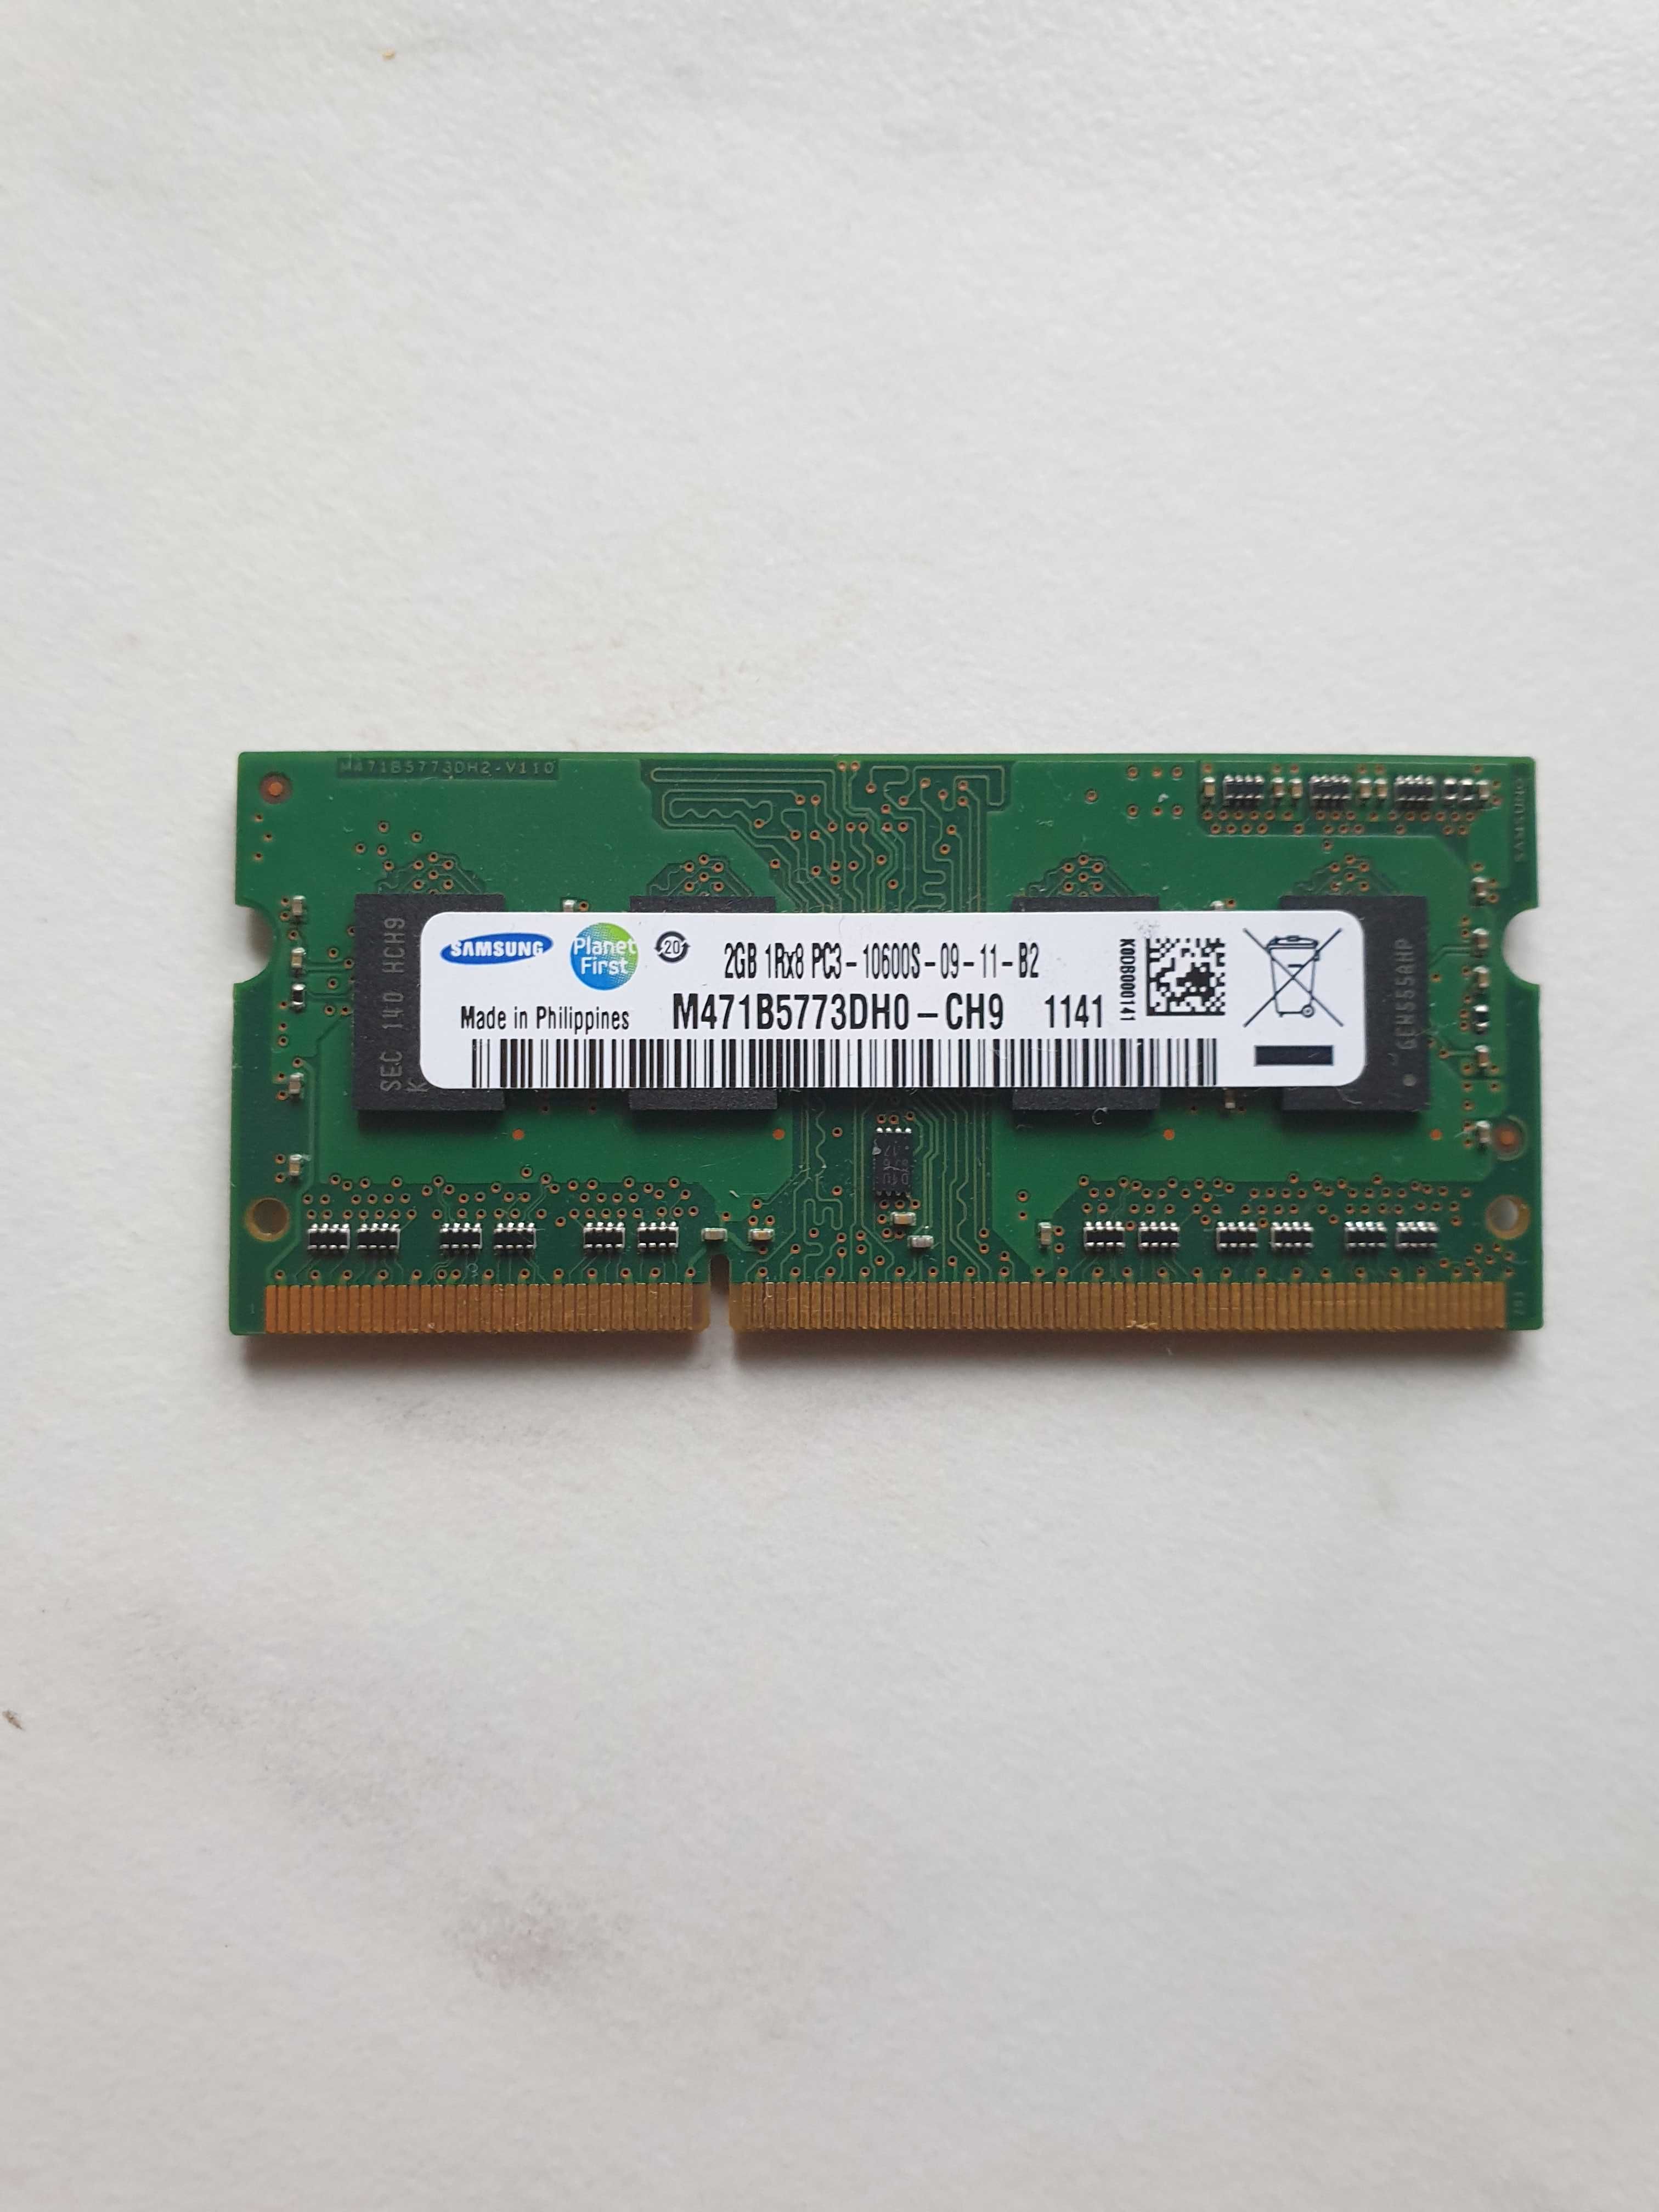 Оперативная память Samsung ddr3 2 Gb 1Rx8 PC3-10600S-09-11-B2